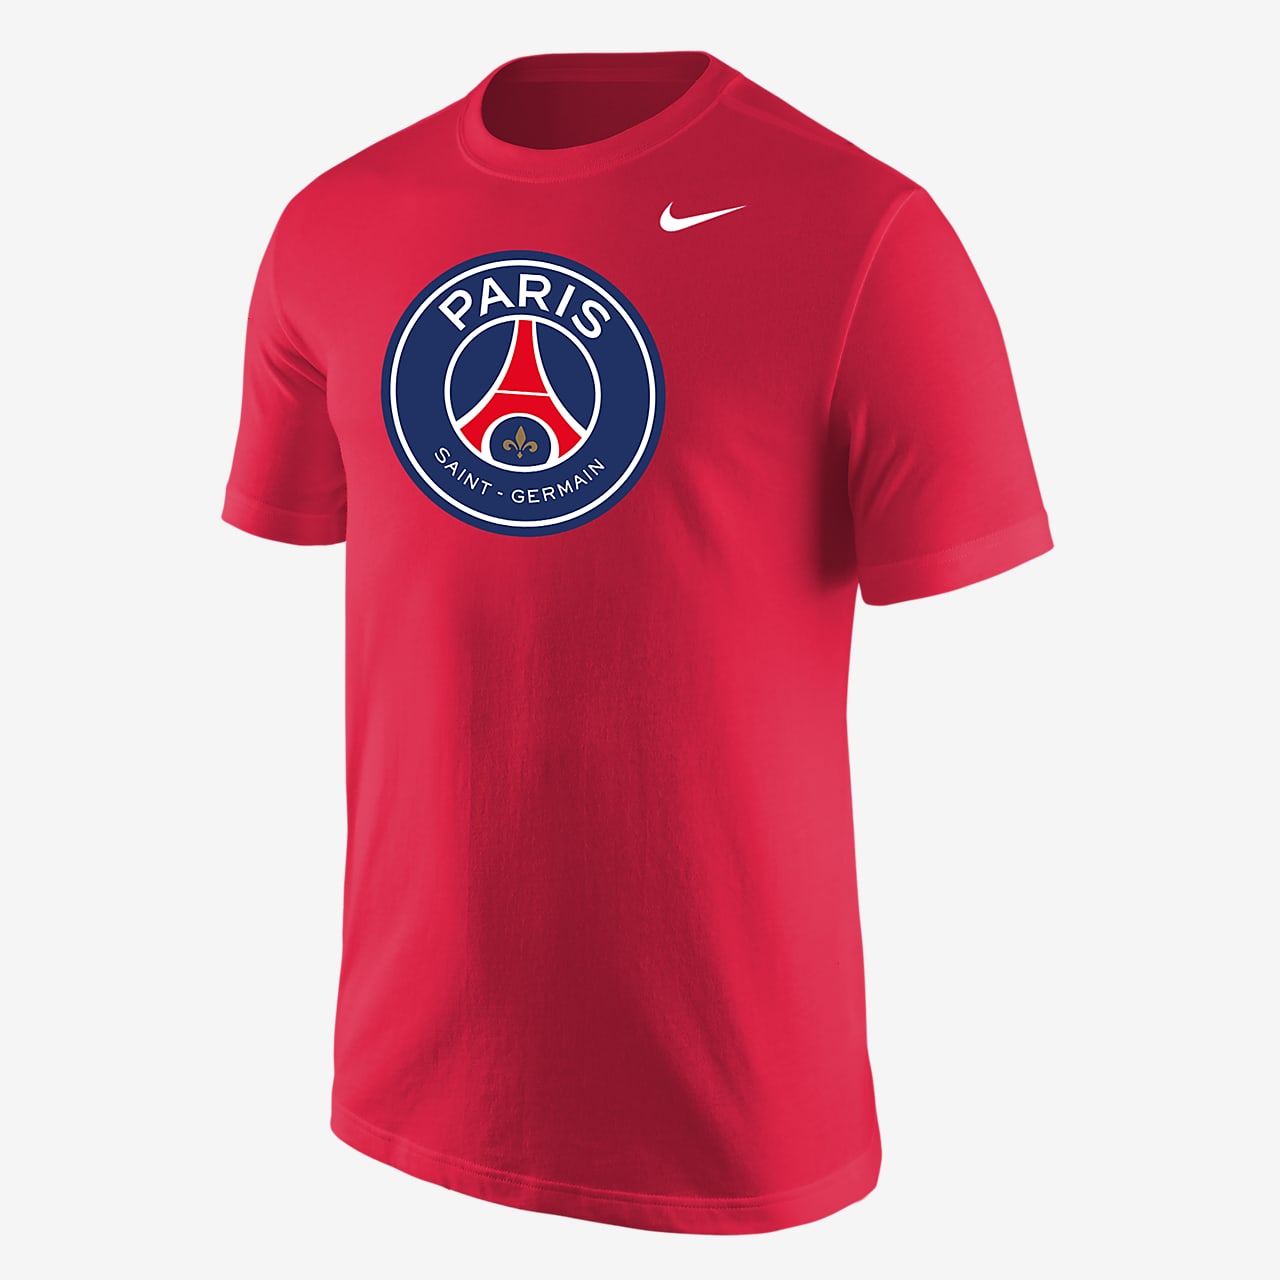 Balling Ventileren Oceaan Paris Saint-Germain Men's T-Shirt. Nike.com